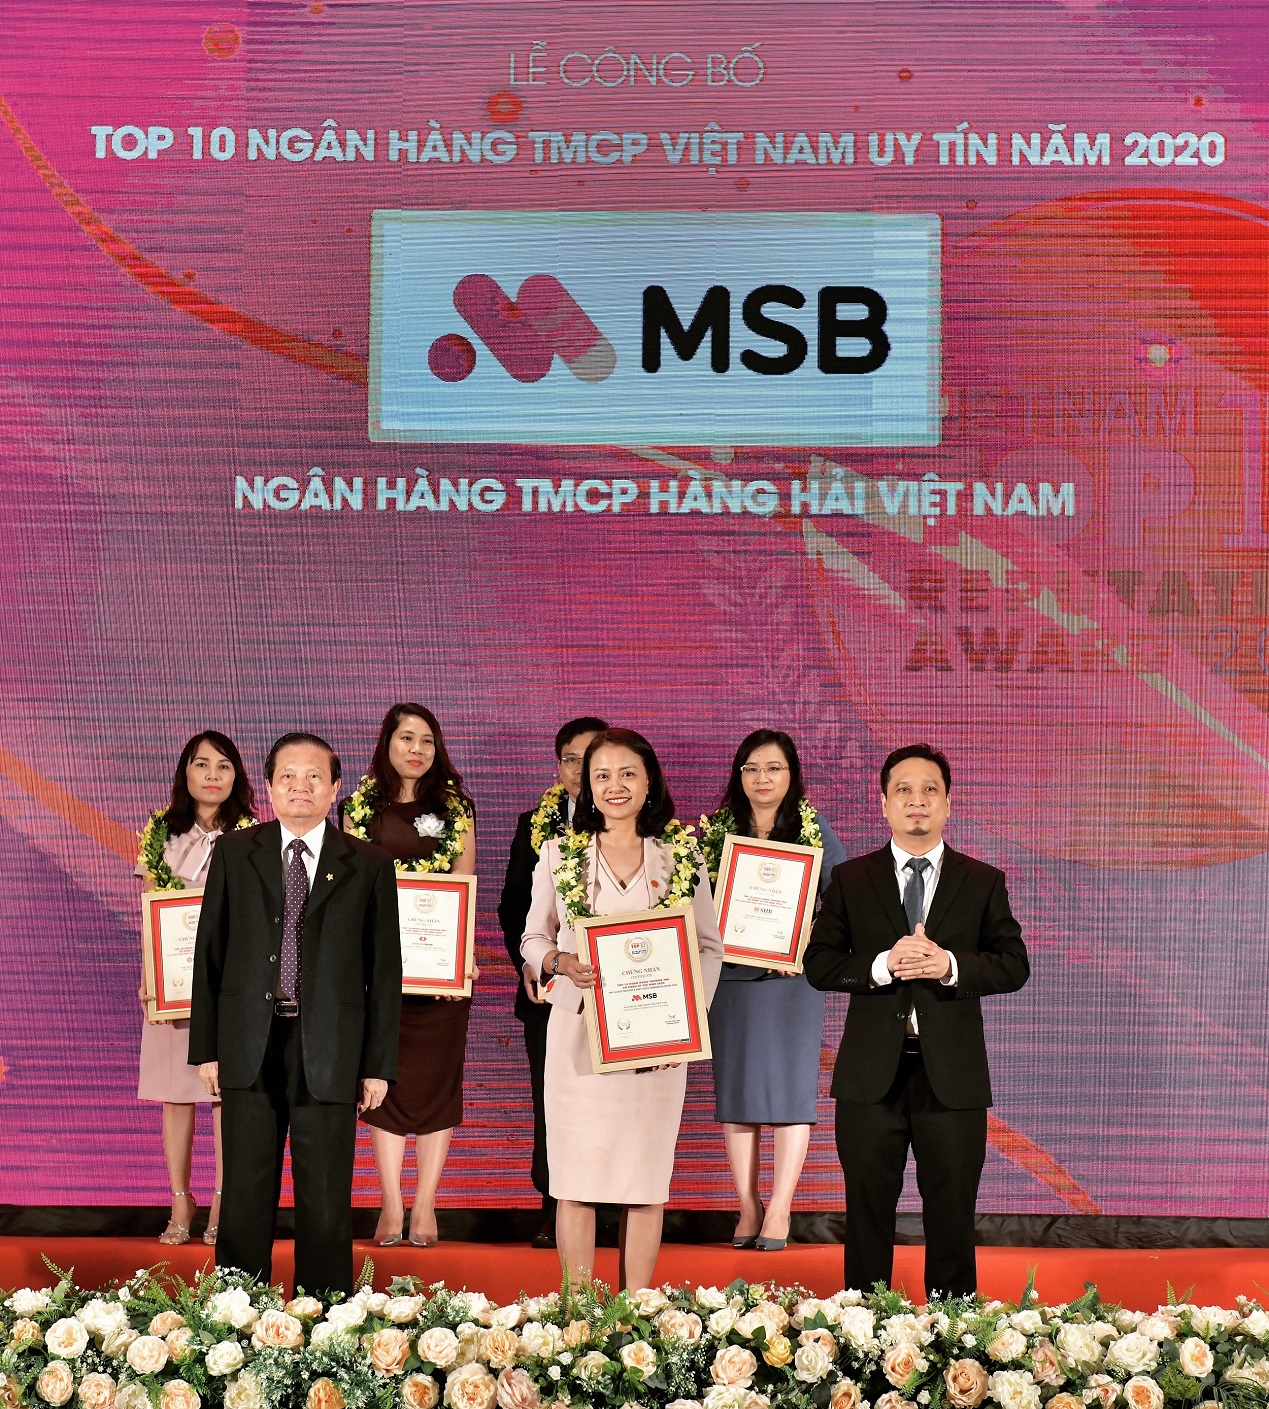 Bà Nguyễn Thị Mỹ Hạnh, Phó TGĐ NH Bán lẻ MSB vinh dự nhận vinh danh Top 10